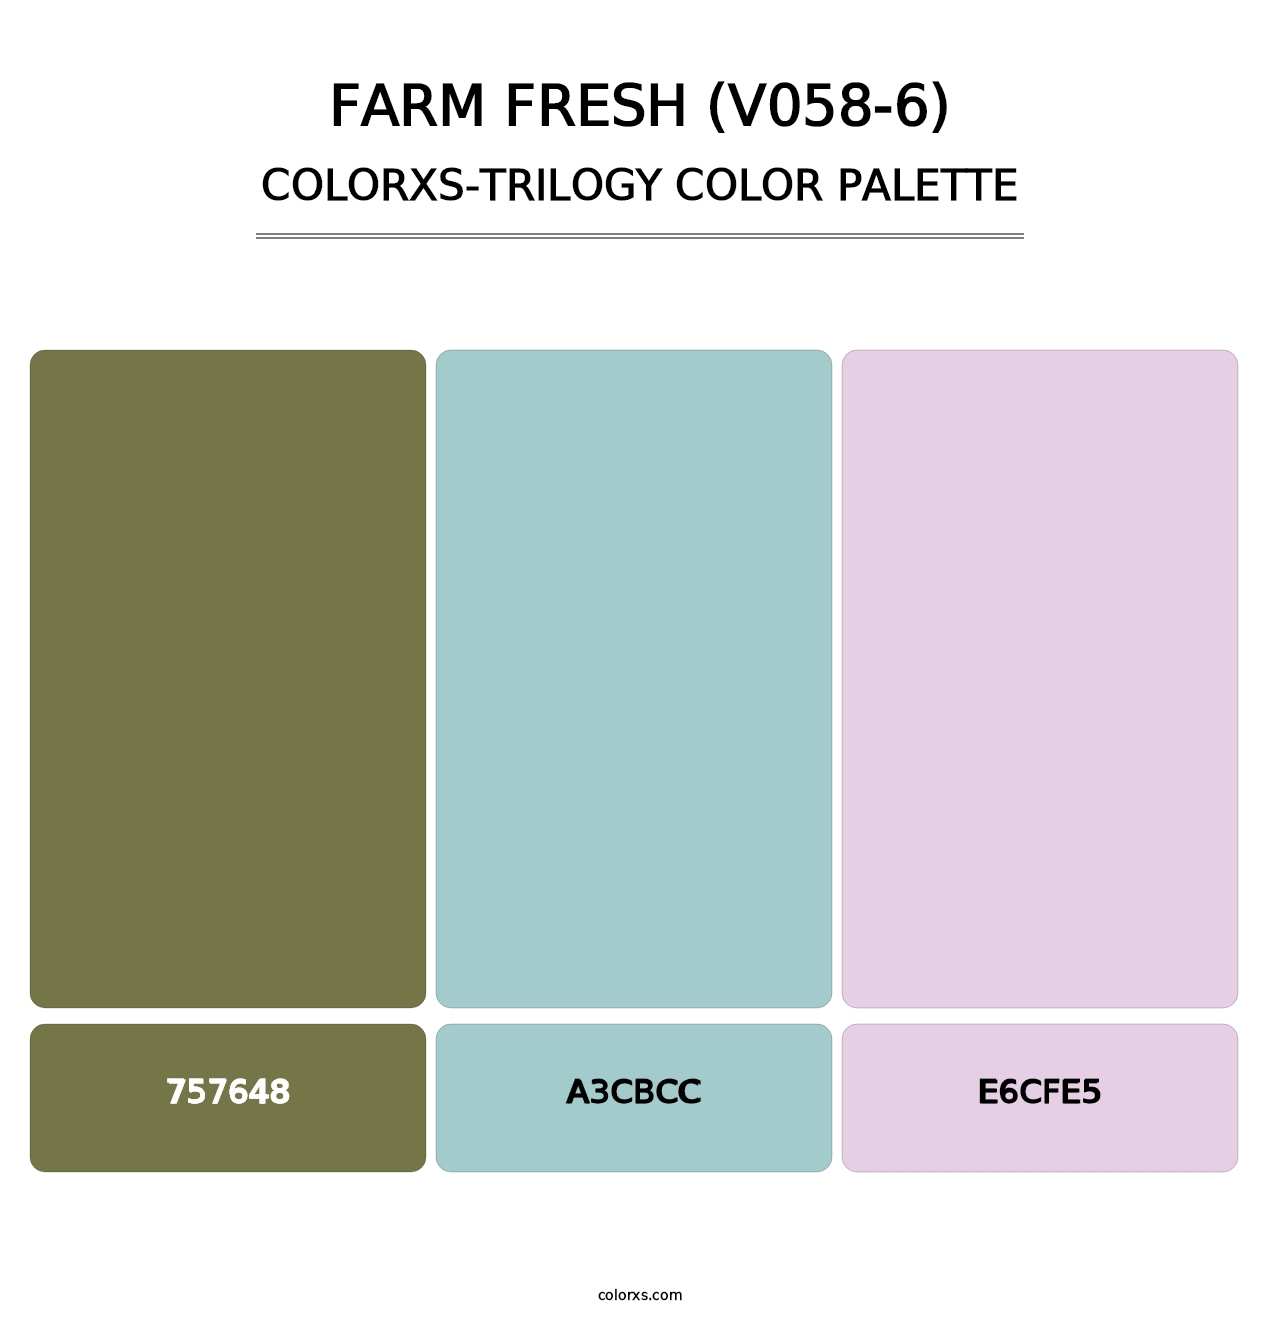 Farm Fresh (V058-6) - Colorxs Trilogy Palette